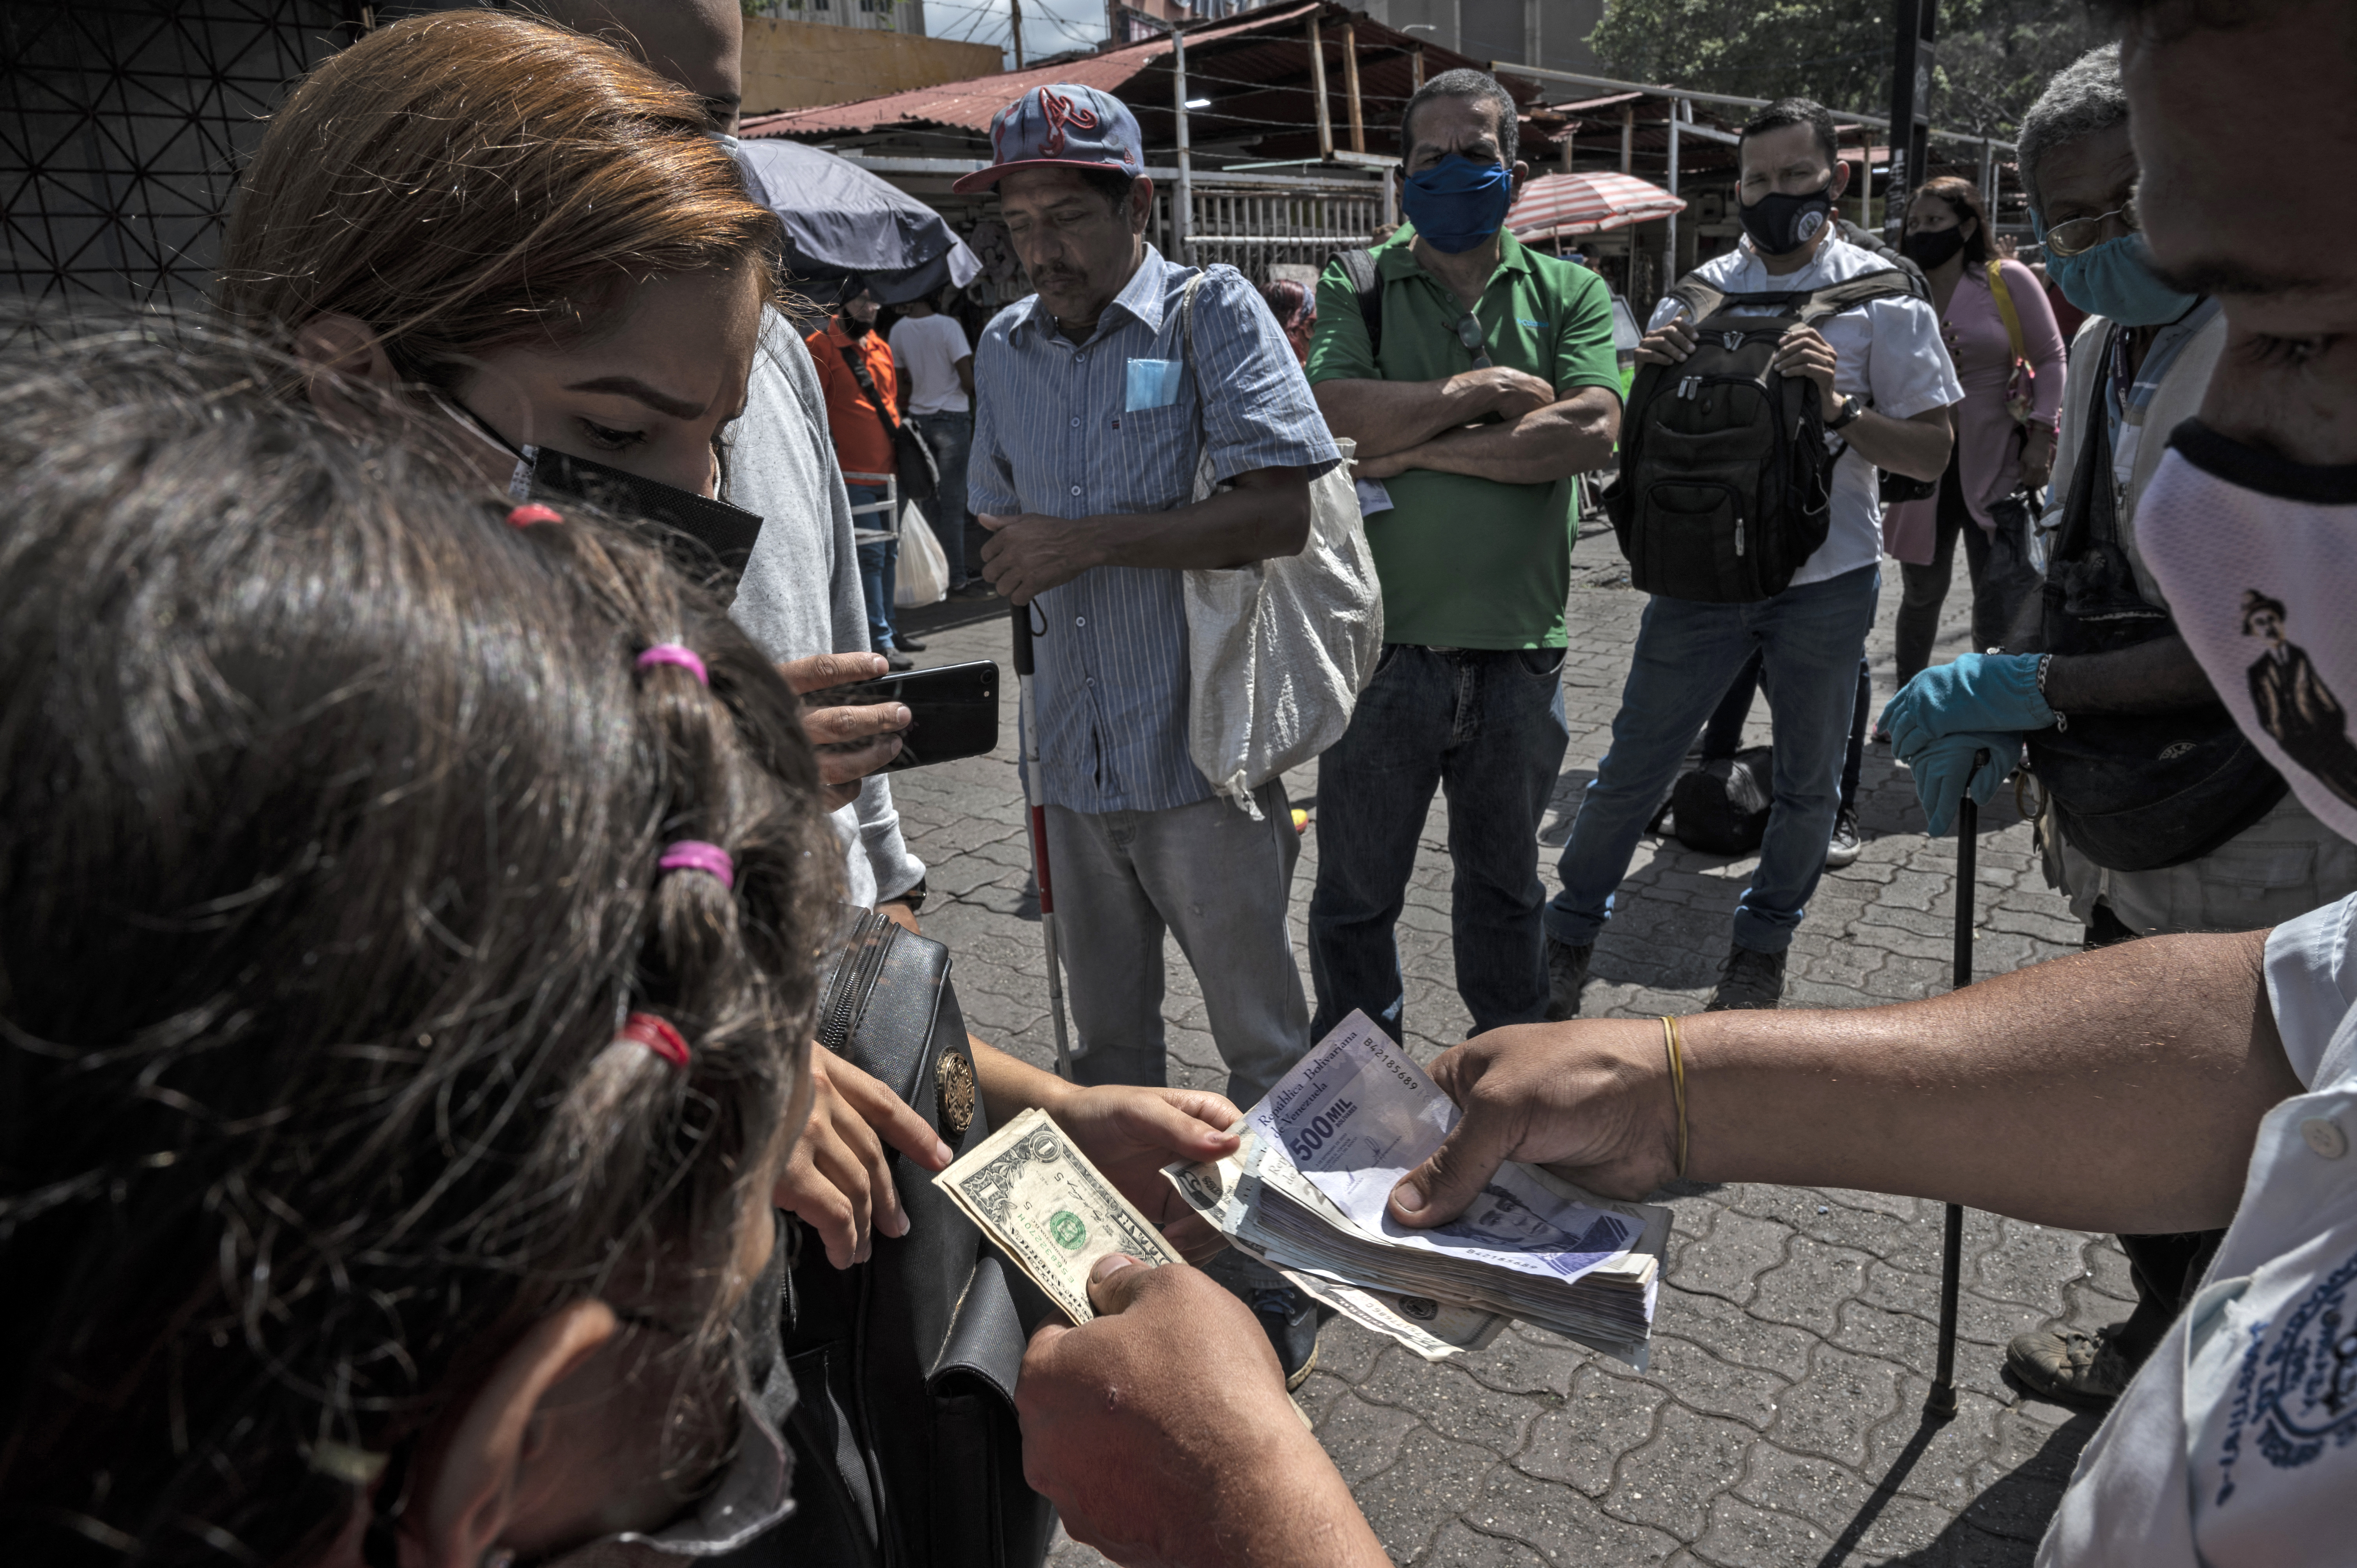 La nueva reconversión monetaria en Venezuela desata compras nerviosas y temor en comerciantes